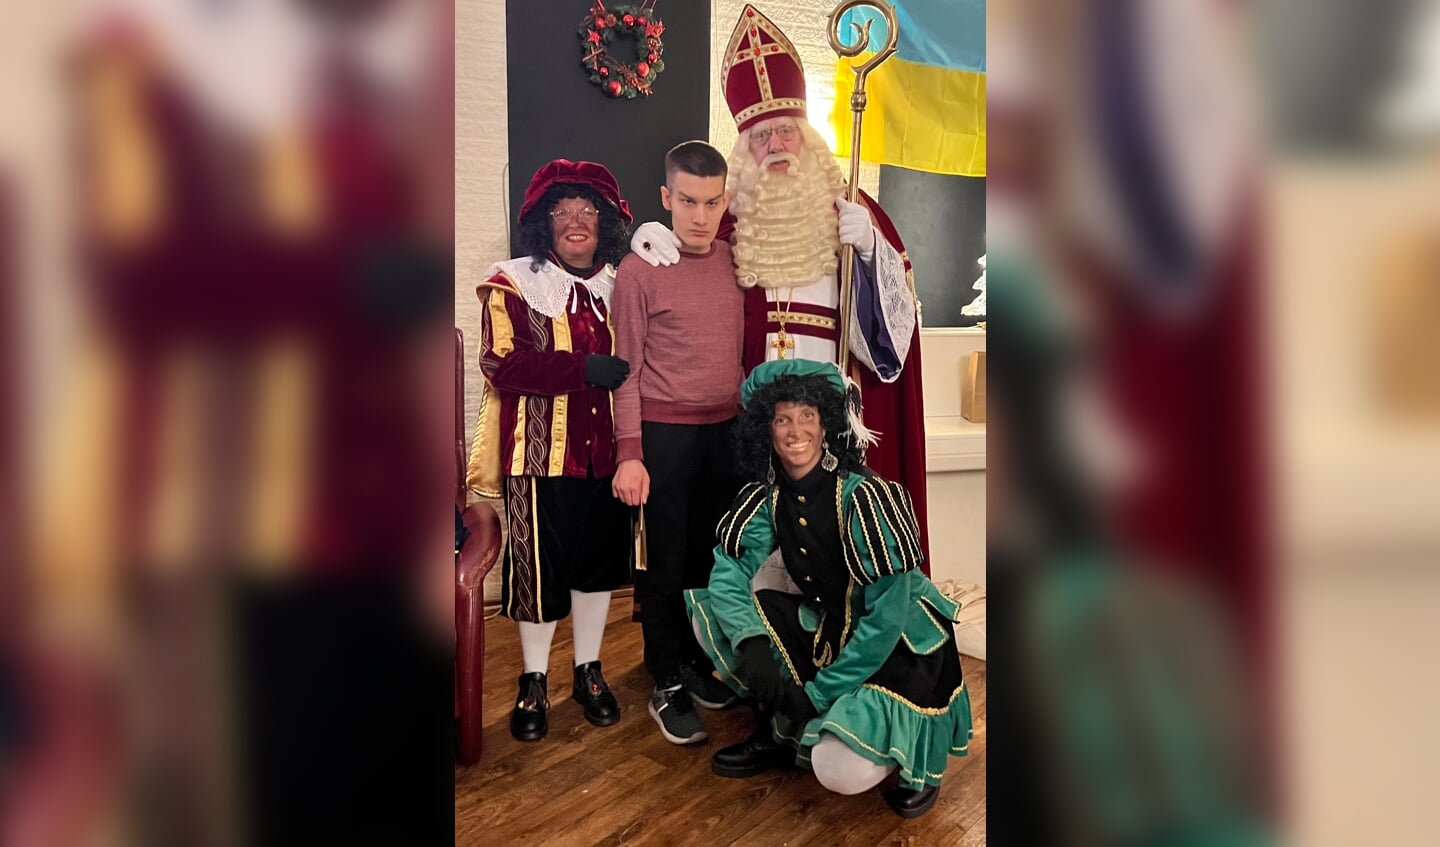 Oekraïne kinderen kregen bezoek van Sinterklaas en de Pieten. Foto: PR WUh